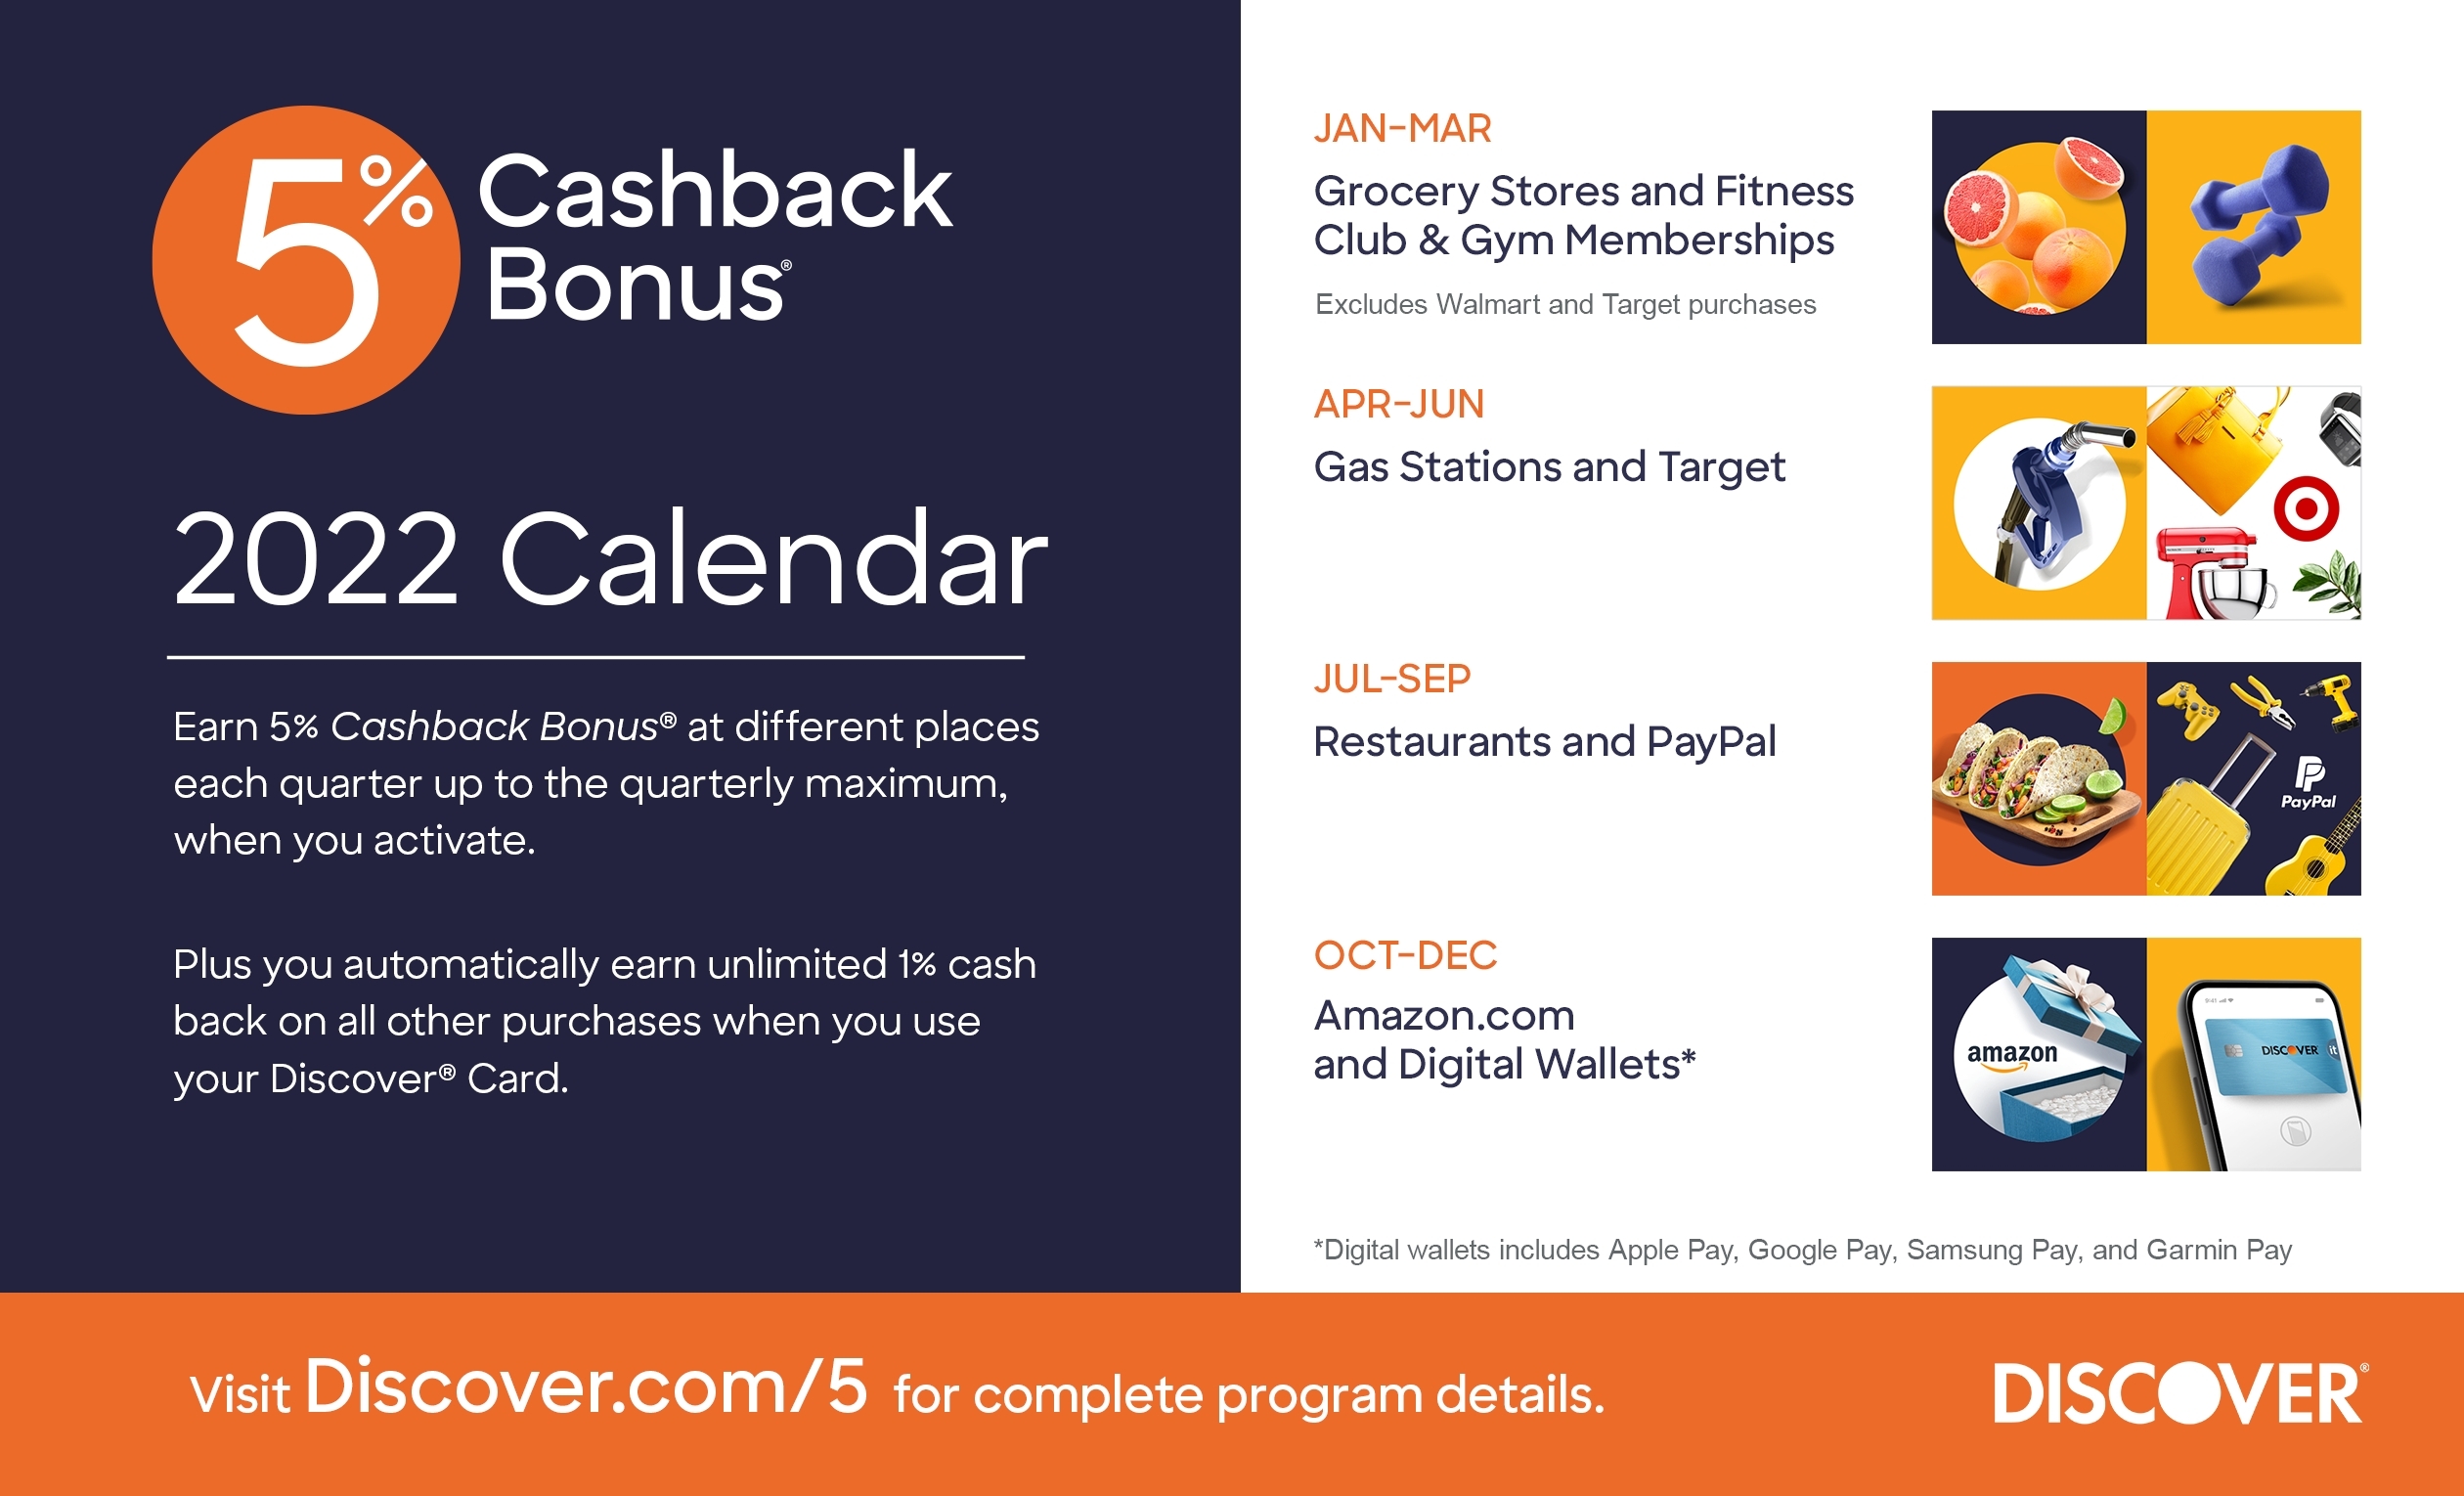 discover-reveals-full-5-cashback-bonus-calendar-for-2022-business-wire